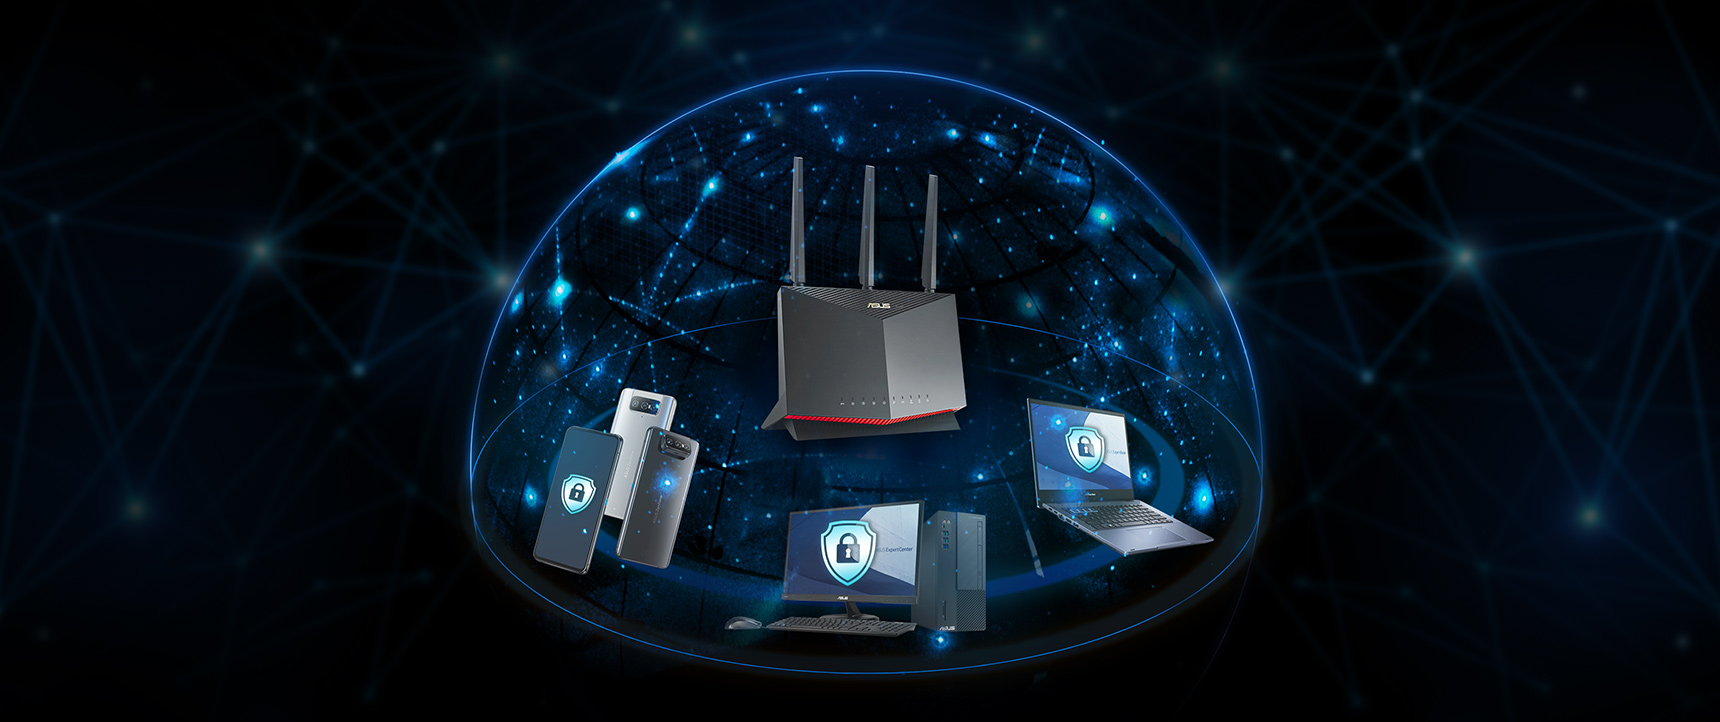 Cele mai multe routere ASUS includ tehnologia AiProtection de la Trend Micro™, care asigură că fiecare dispozitiv din rețeaua dvs. de afaceri este protejat.